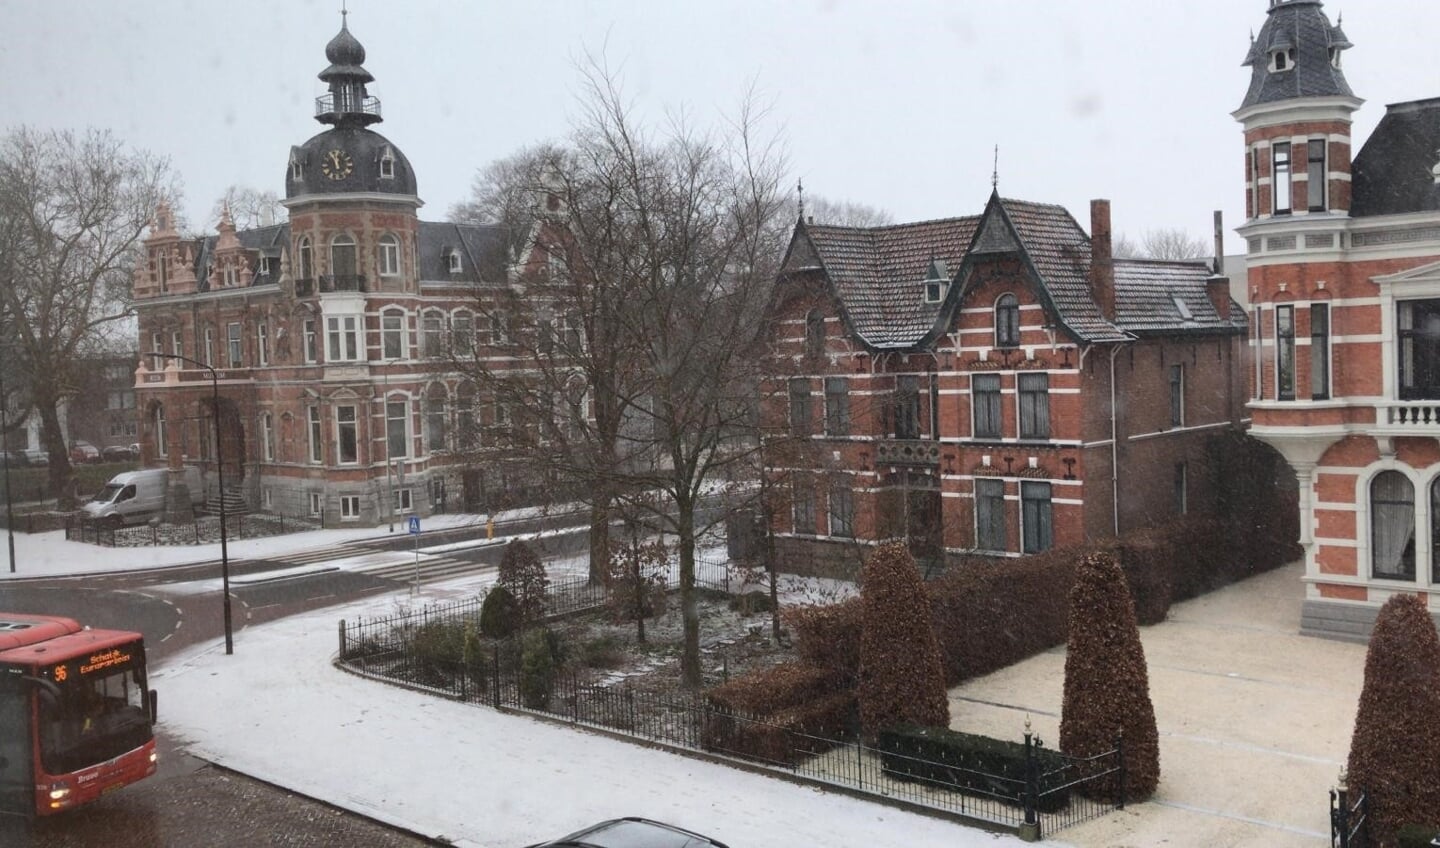 Sneeuwfoto van Sjannie van den Berg.